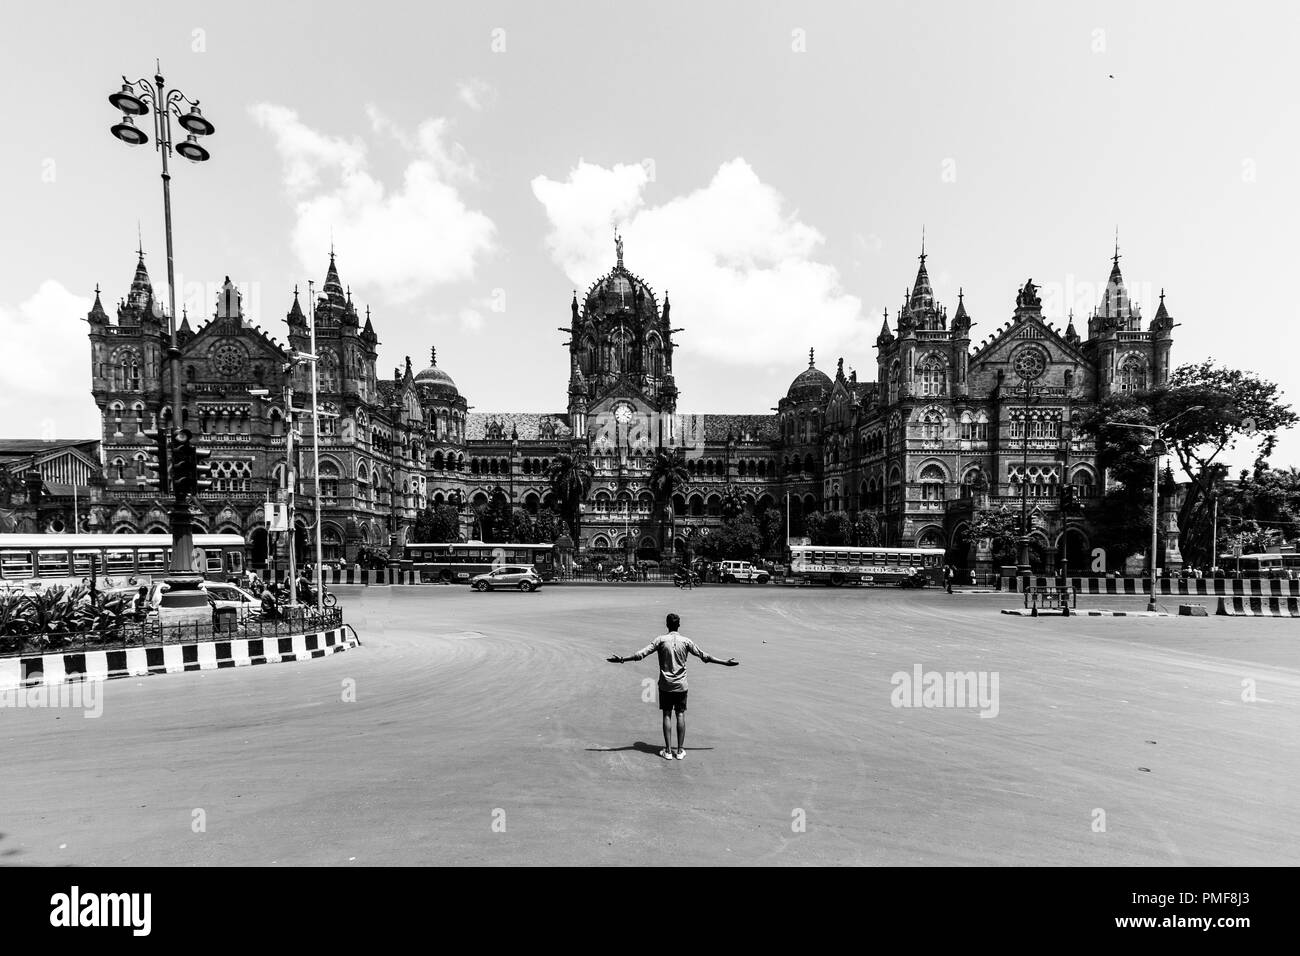 Chhatrapati Shivaji Maharaj Terminus à Mumbai, anciennement connu sous le nom de Victoria Terminus, est une gare ferroviaire historique et un site classé au patrimoine mondial de l'UNESCO. Banque D'Images